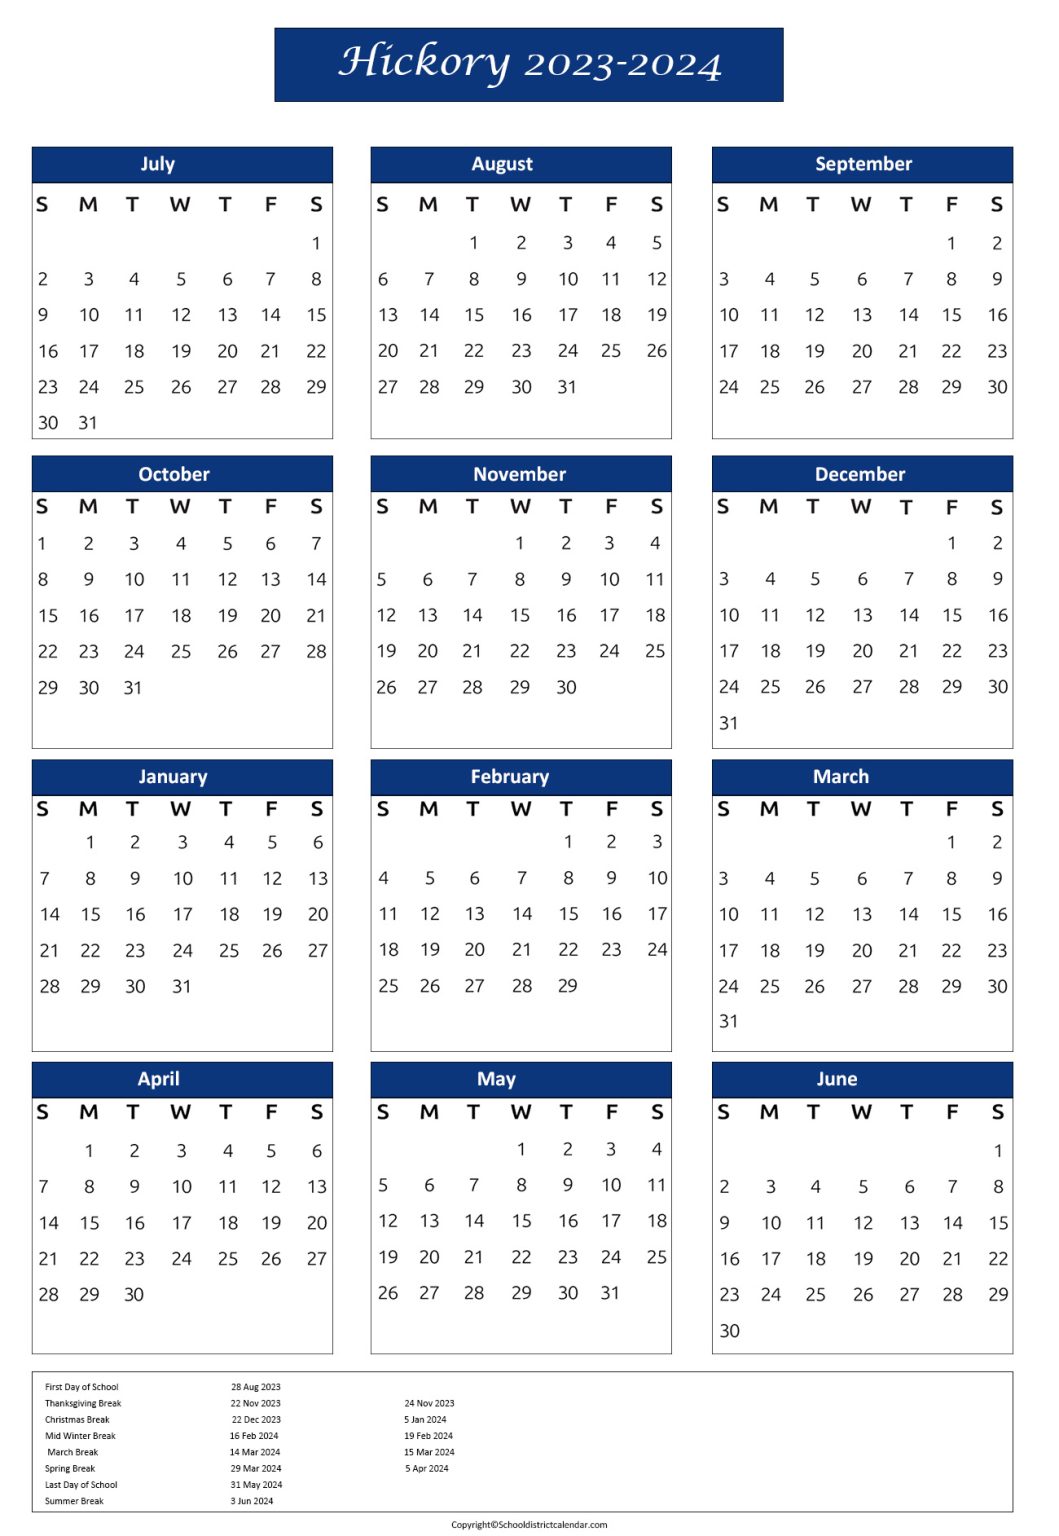 Hickory City Schools Calendar Holidays 2023 2024